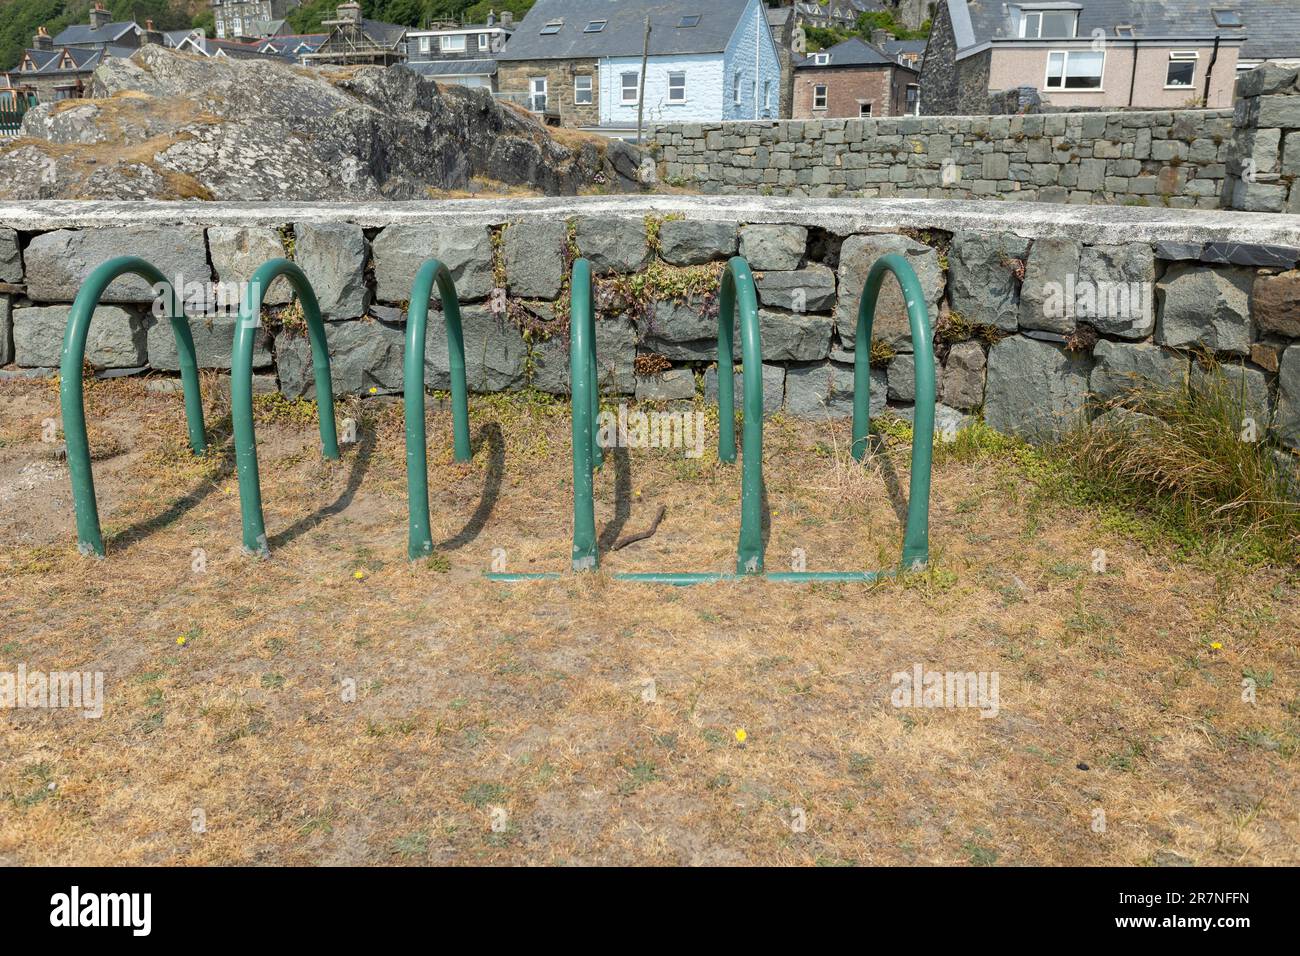 Fahrradständer aus grünem Metall oder Ständer auf festem Untergrund neben Rasen Stockfoto